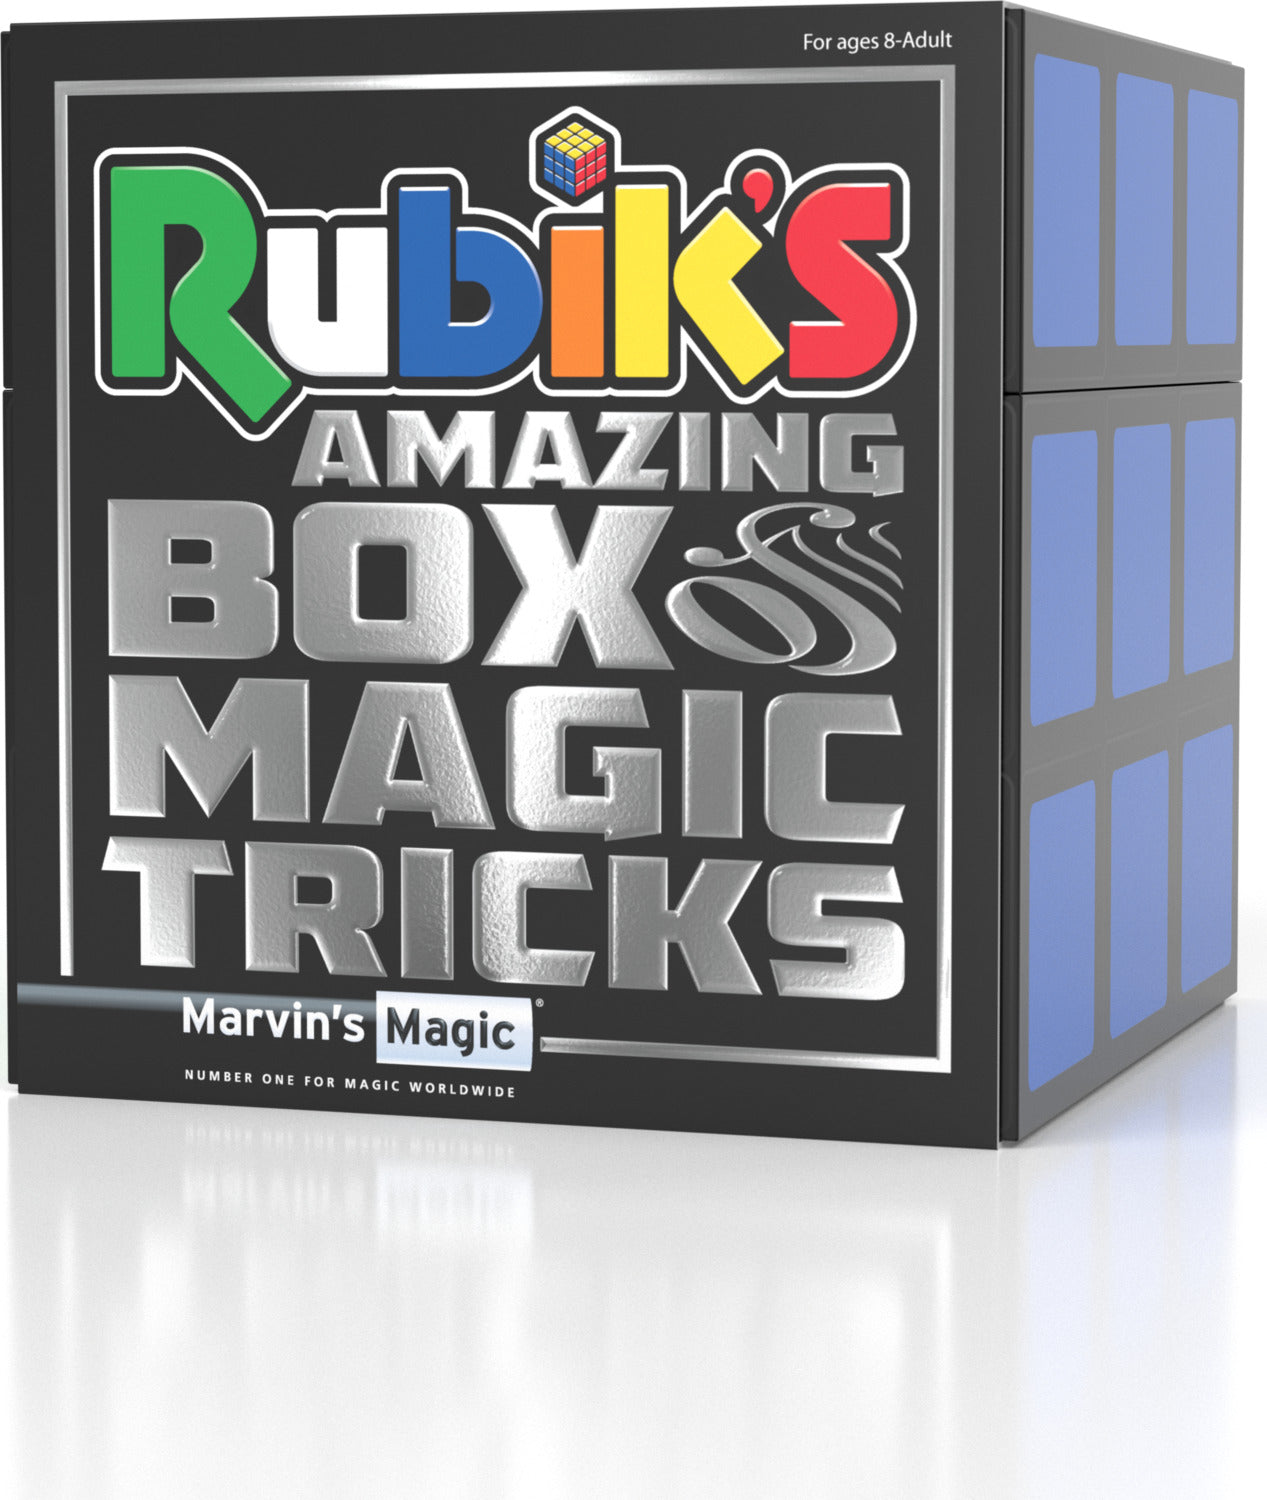 Rubik's Cube Magic Set